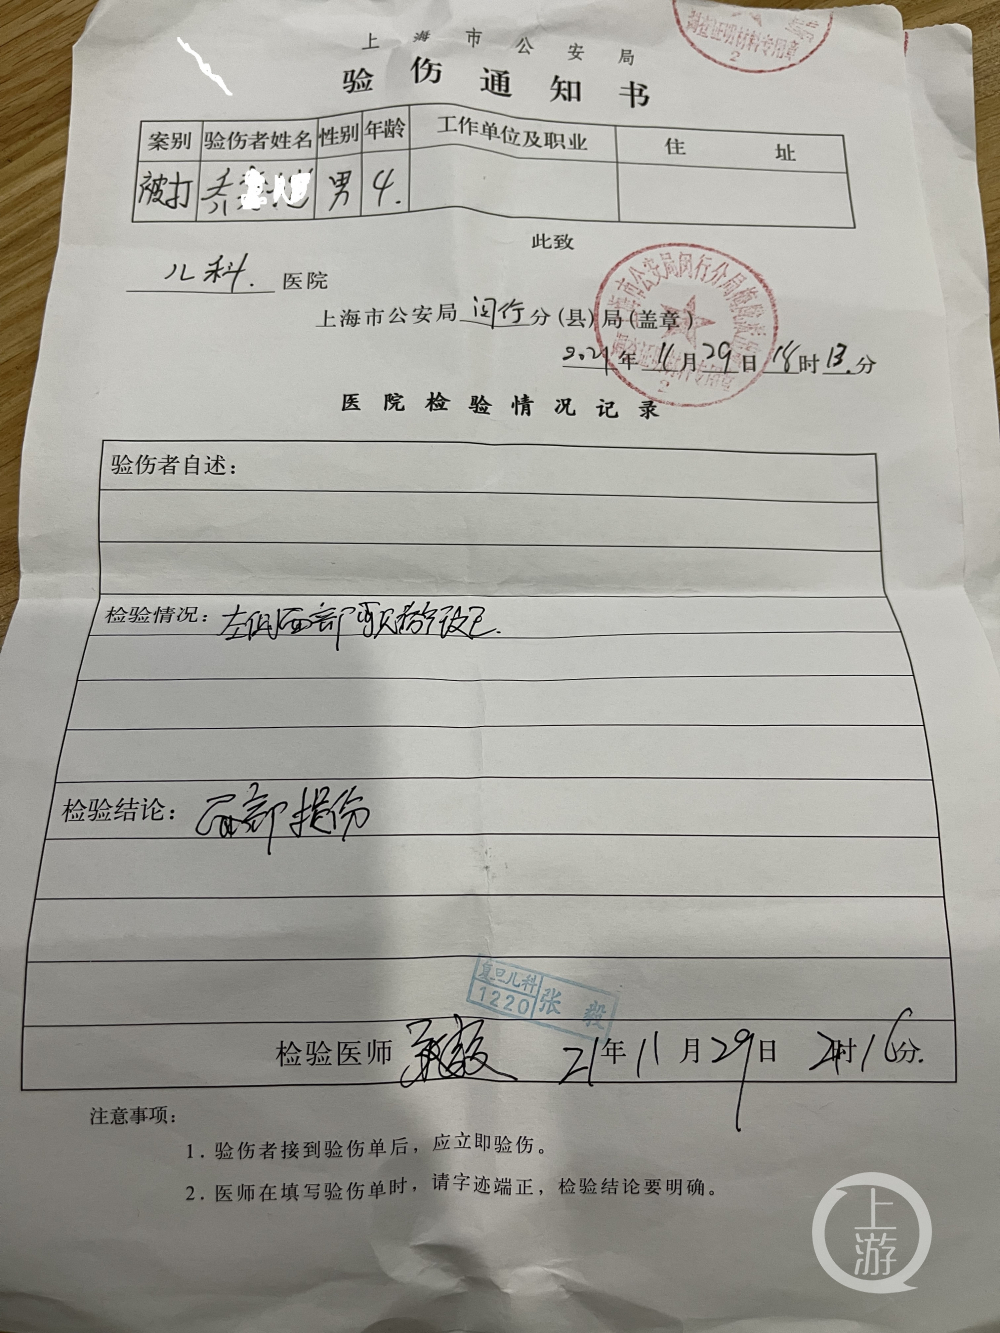 上海民办幼儿园老师殴打儿童被停职 警方介入4孩童验伤报告出炉